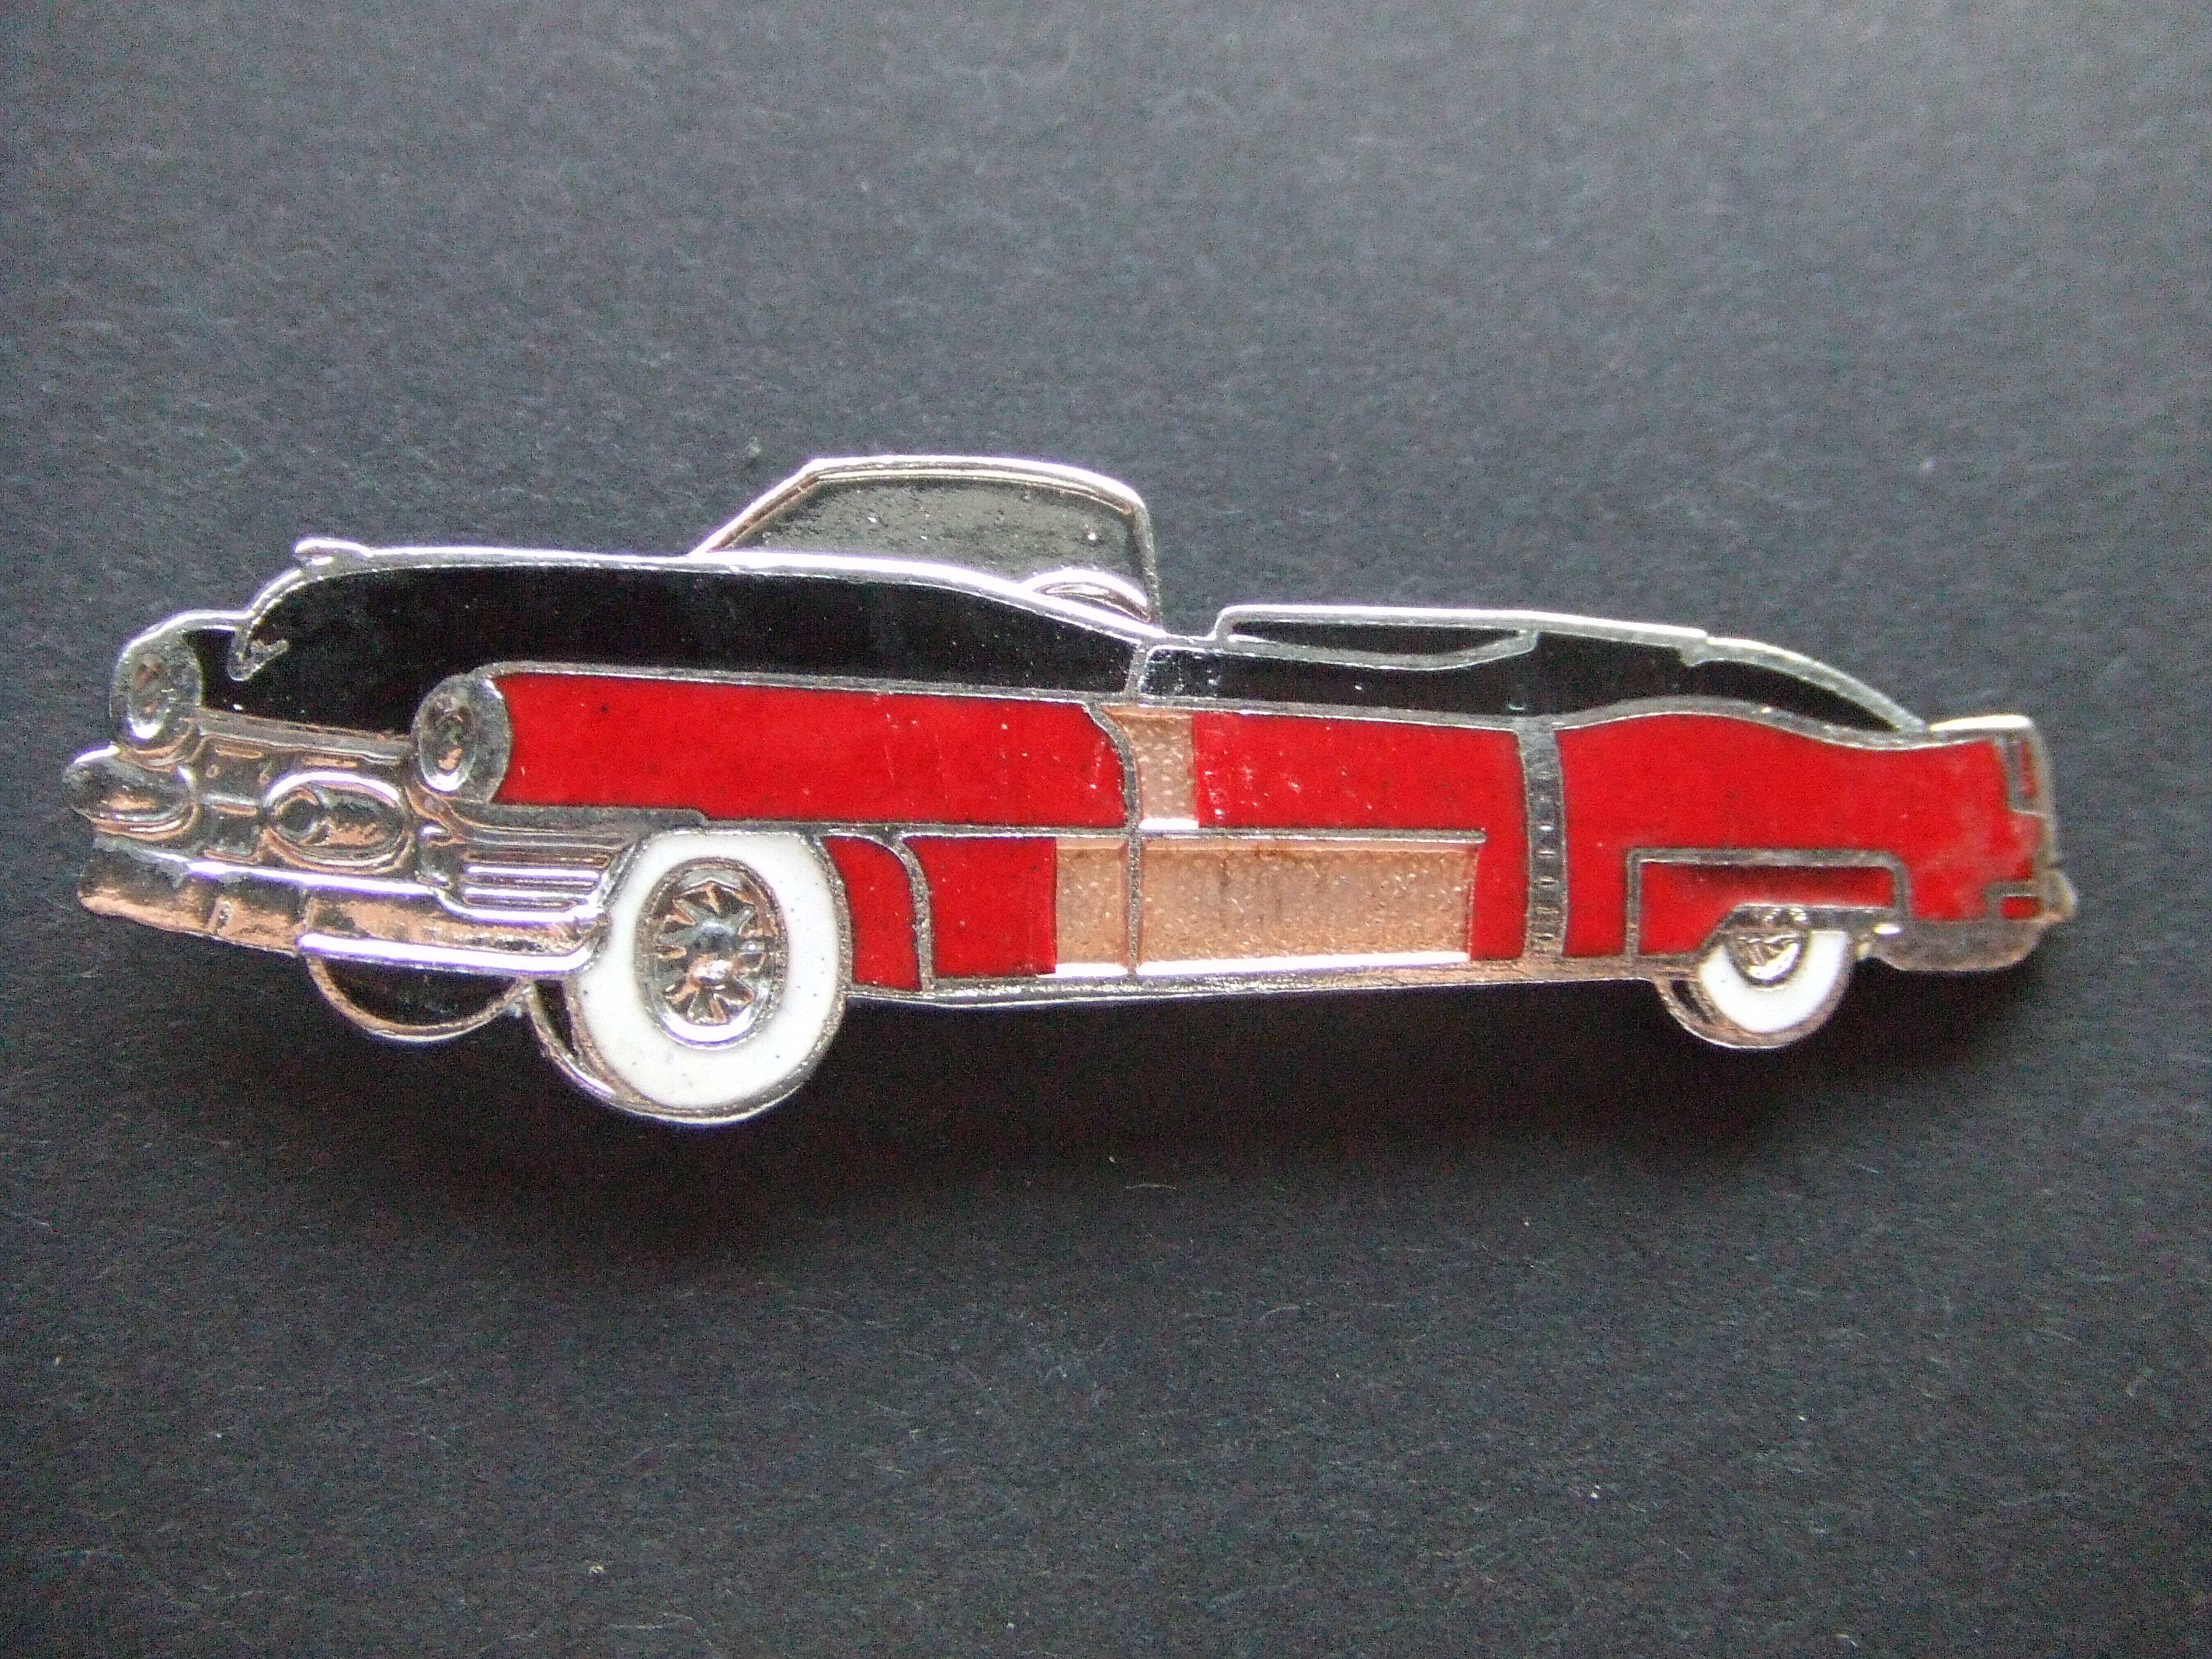 Cadillac Convertible 1953 rood